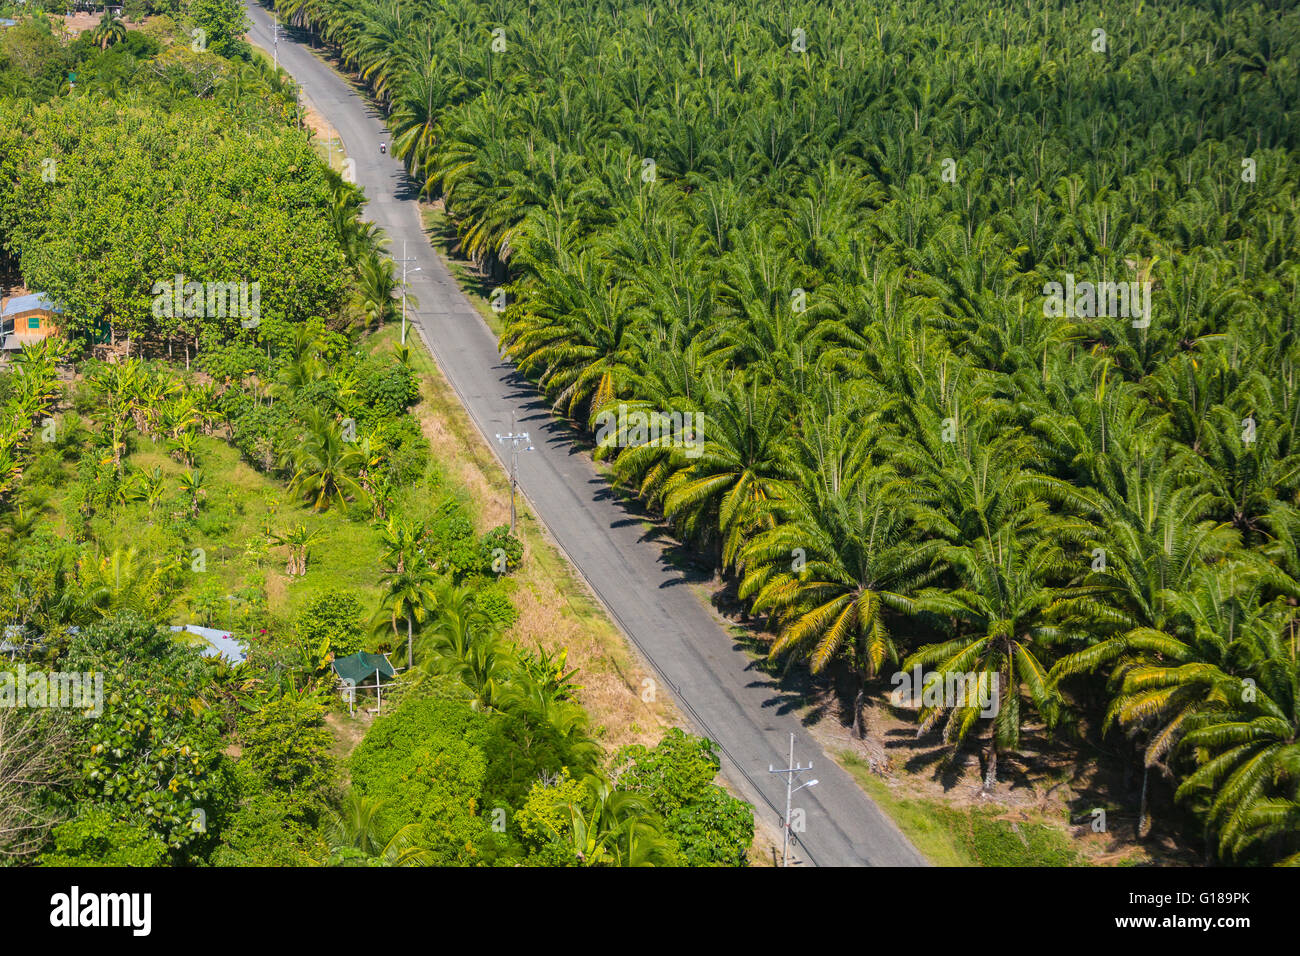 PALMAR SUR, COSTA RICA - Vue aérienne de plantation de palmiers à huile, et de la route, dans la province de Puntarenas Banque D'Images